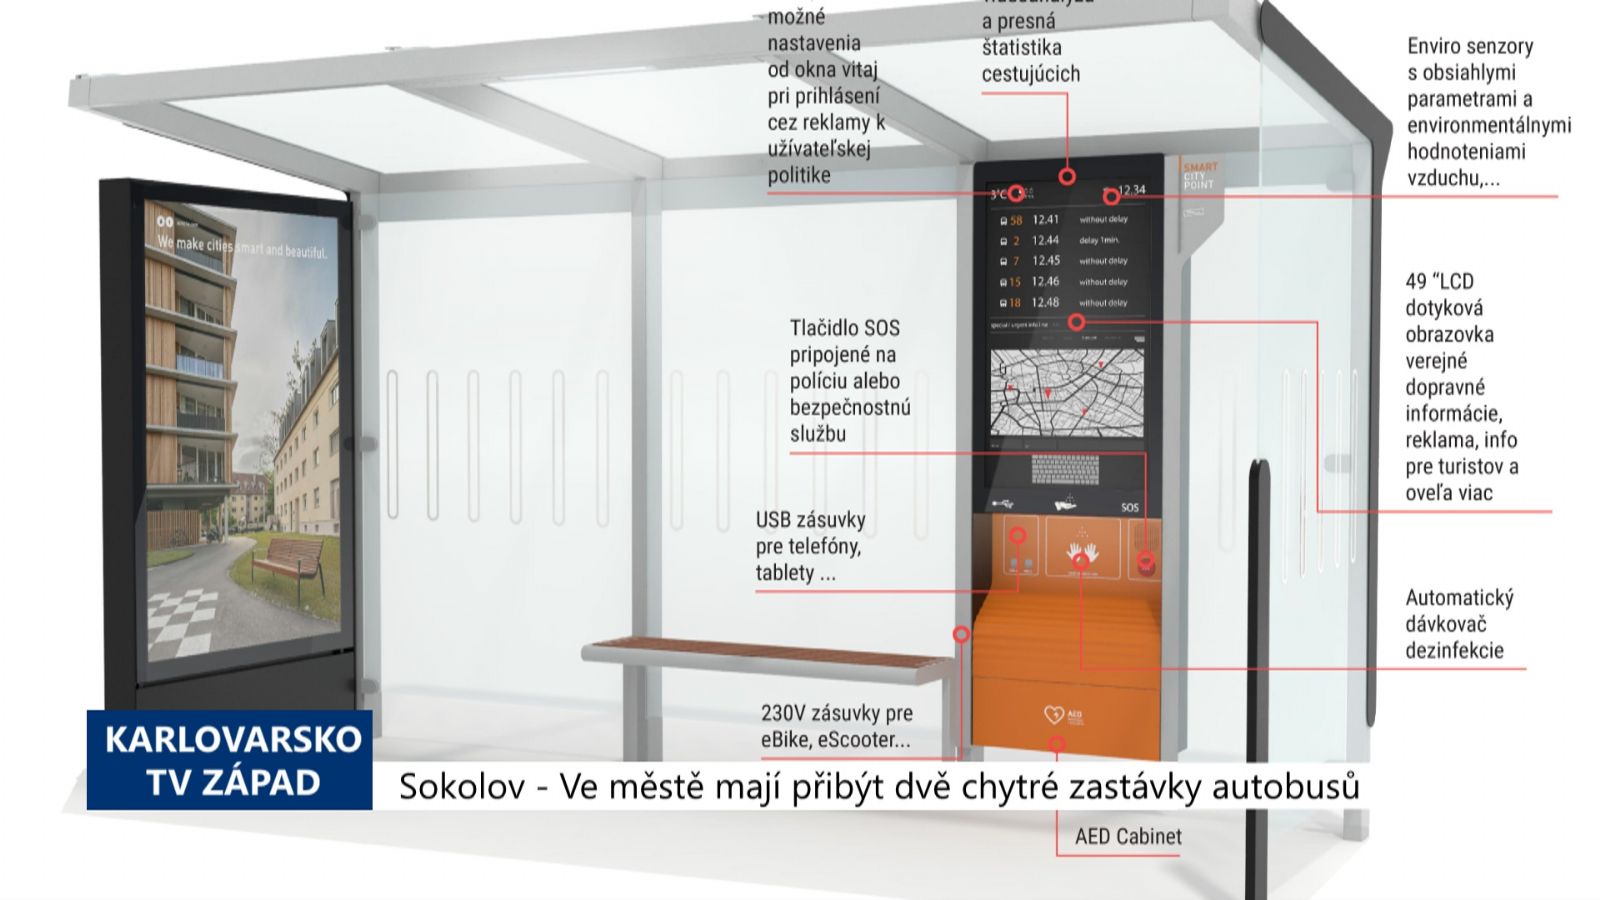 Sokolov: Ve městě mají přibýt dvě chytré zastávky autobusů (TV Západ)